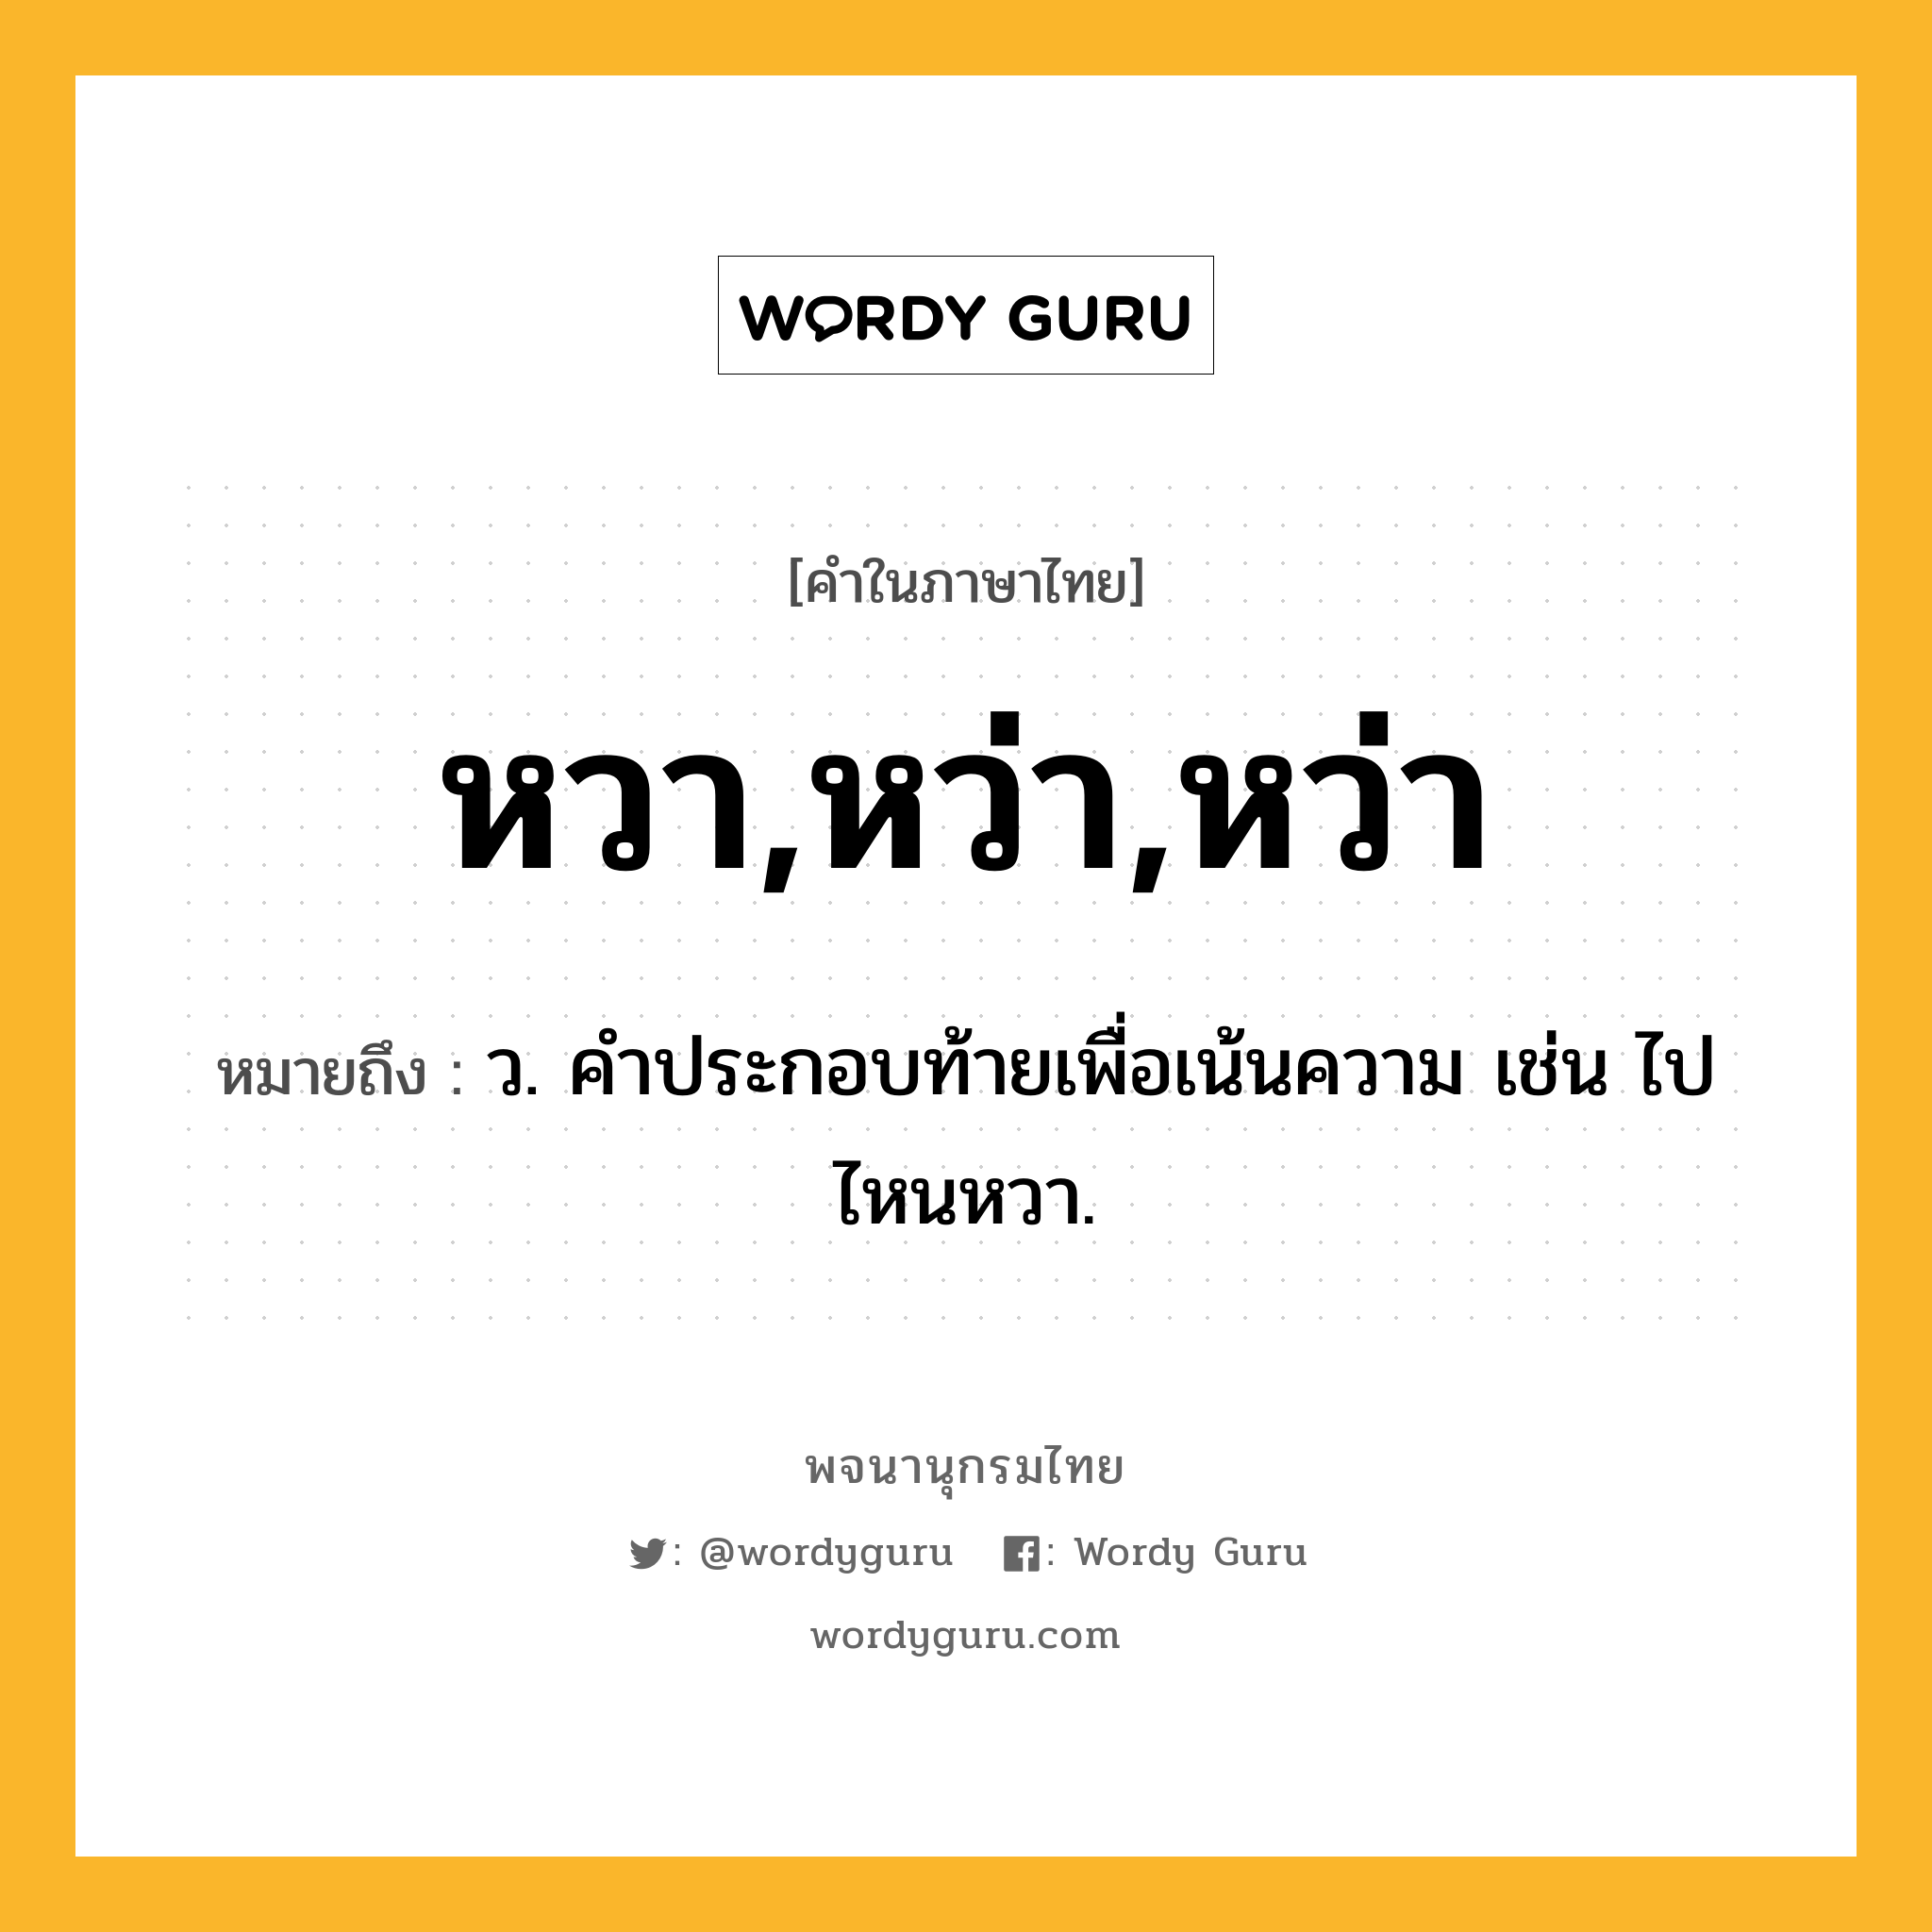 หวา,หว่า,หว่า หมายถึงอะไร?, คำในภาษาไทย หวา,หว่า,หว่า หมายถึง ว. คําประกอบท้ายเพื่อเน้นความ เช่น ไปไหนหวา.